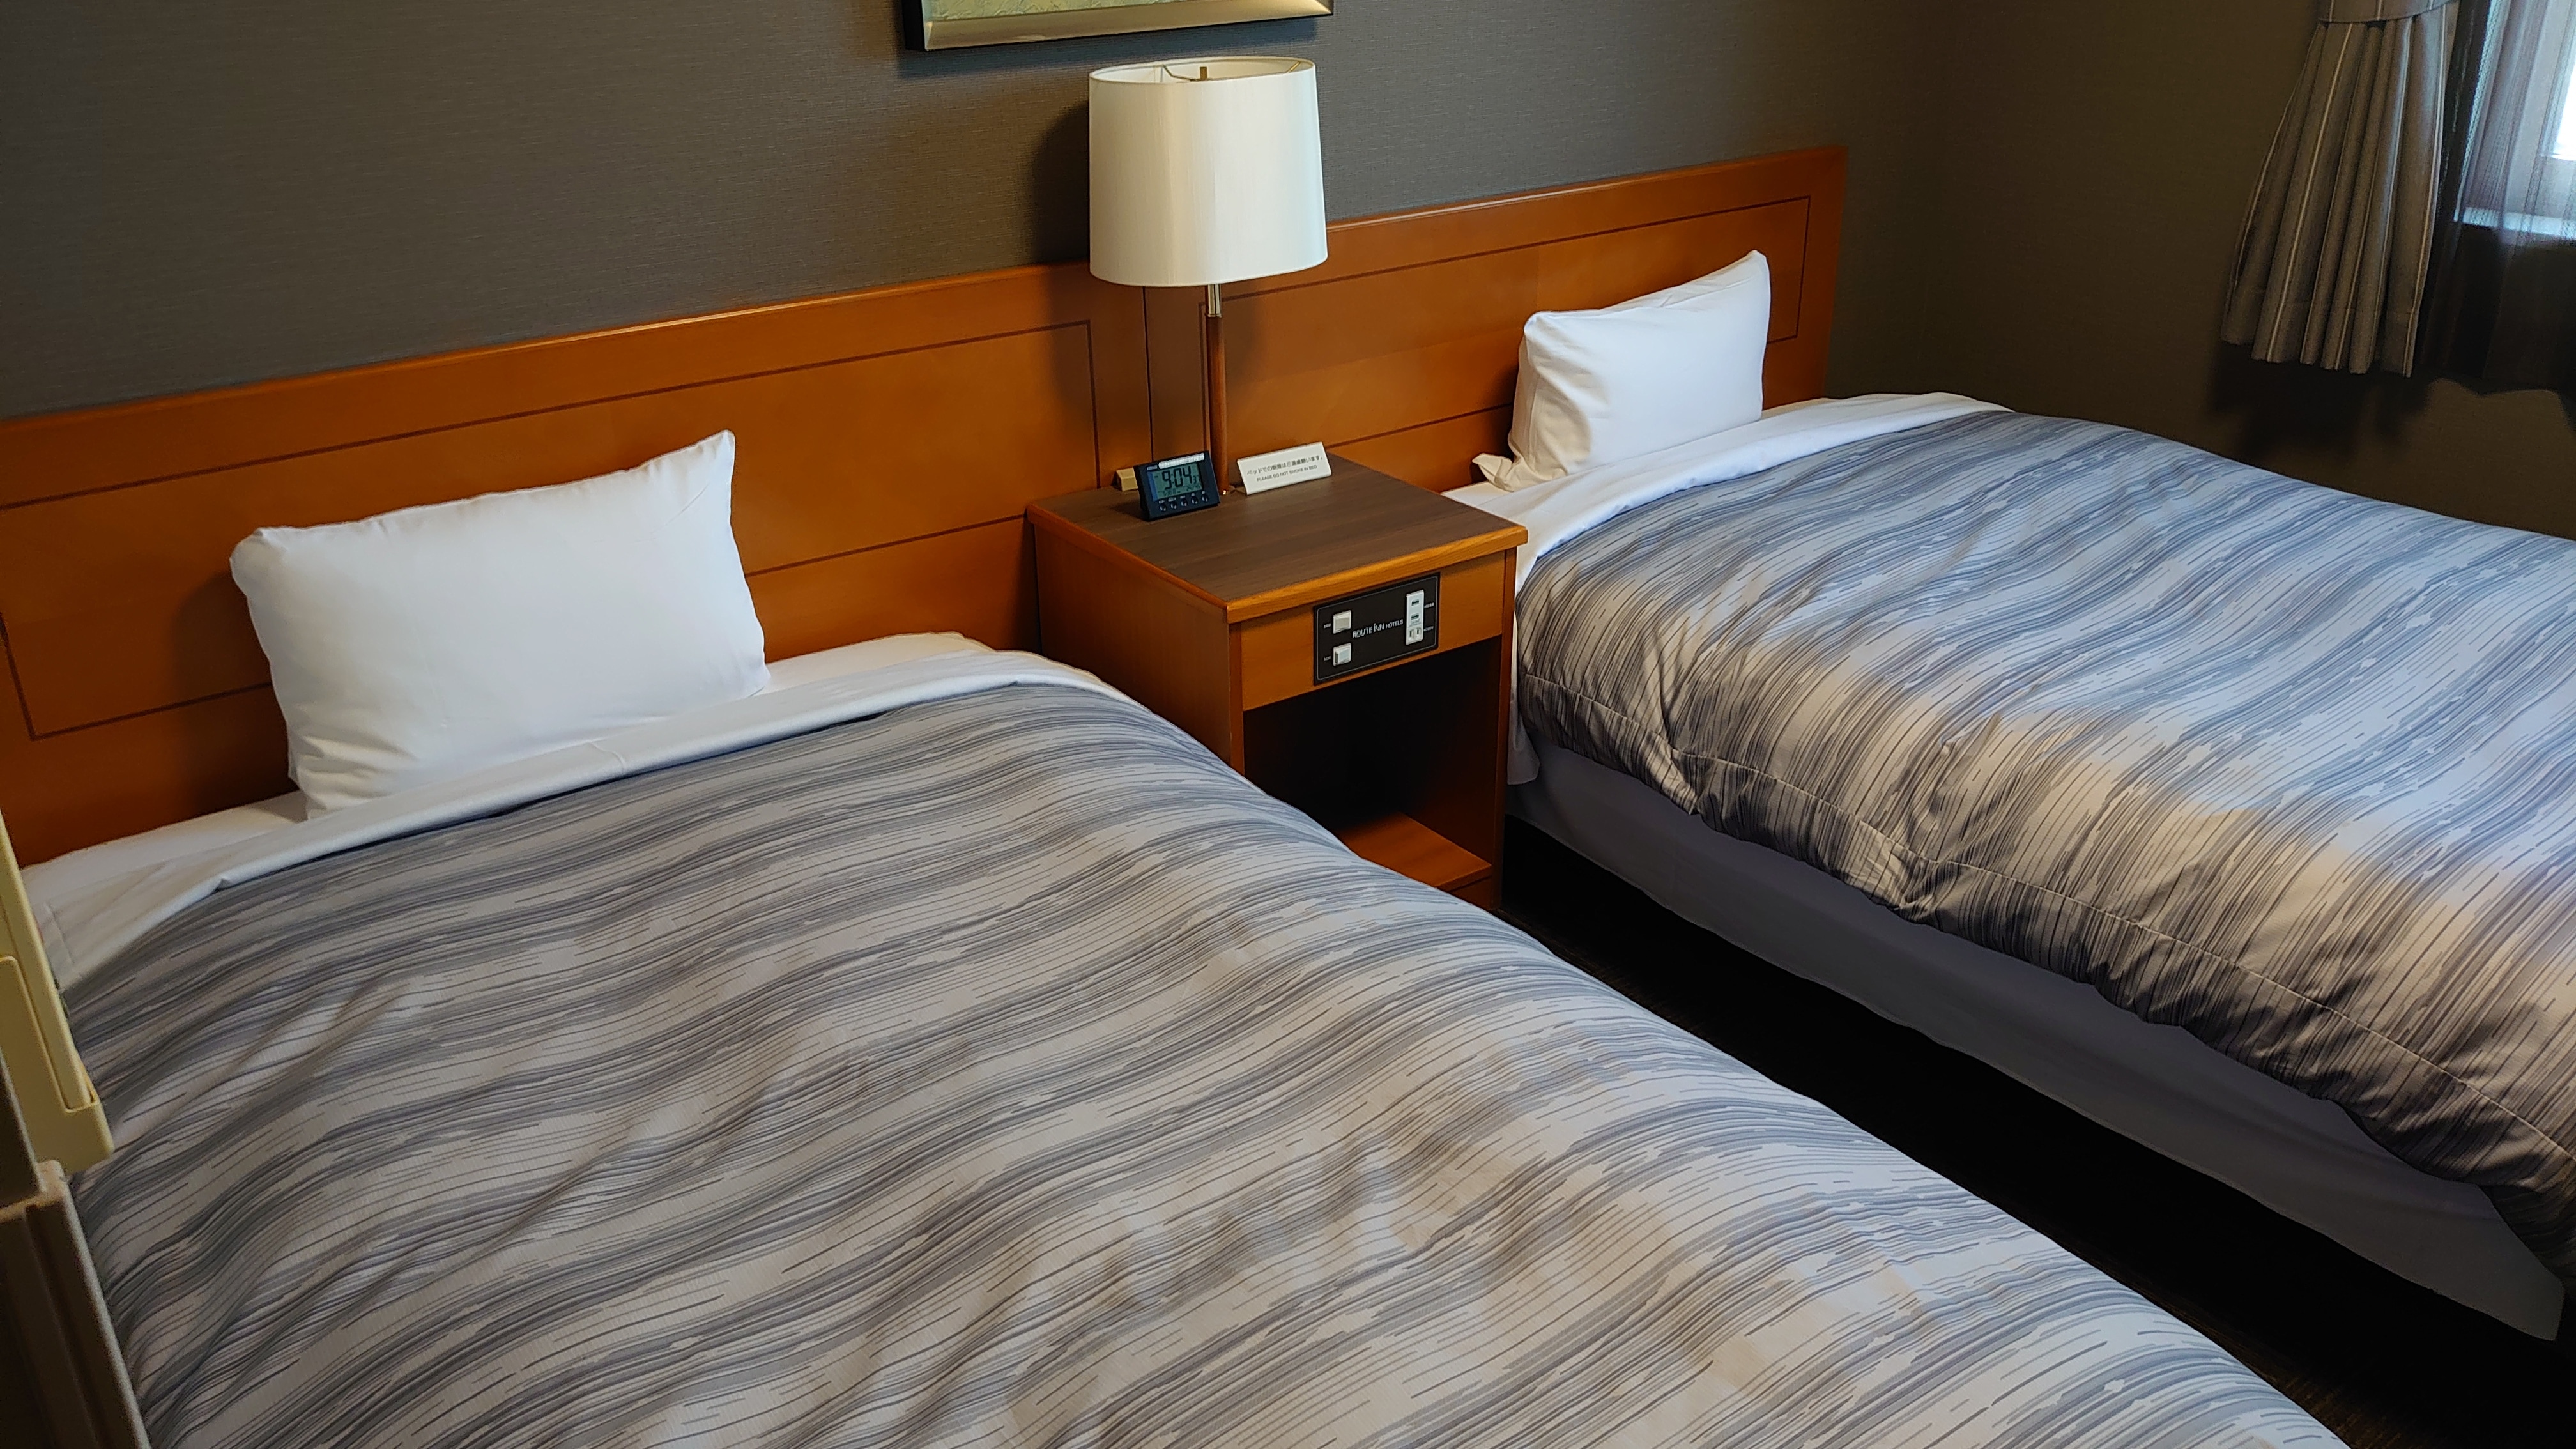 트윈룸 침대 사이즈 120×196(cm) 약 15㎡의 객실에 침대가 2대 구비되어 있습니다.